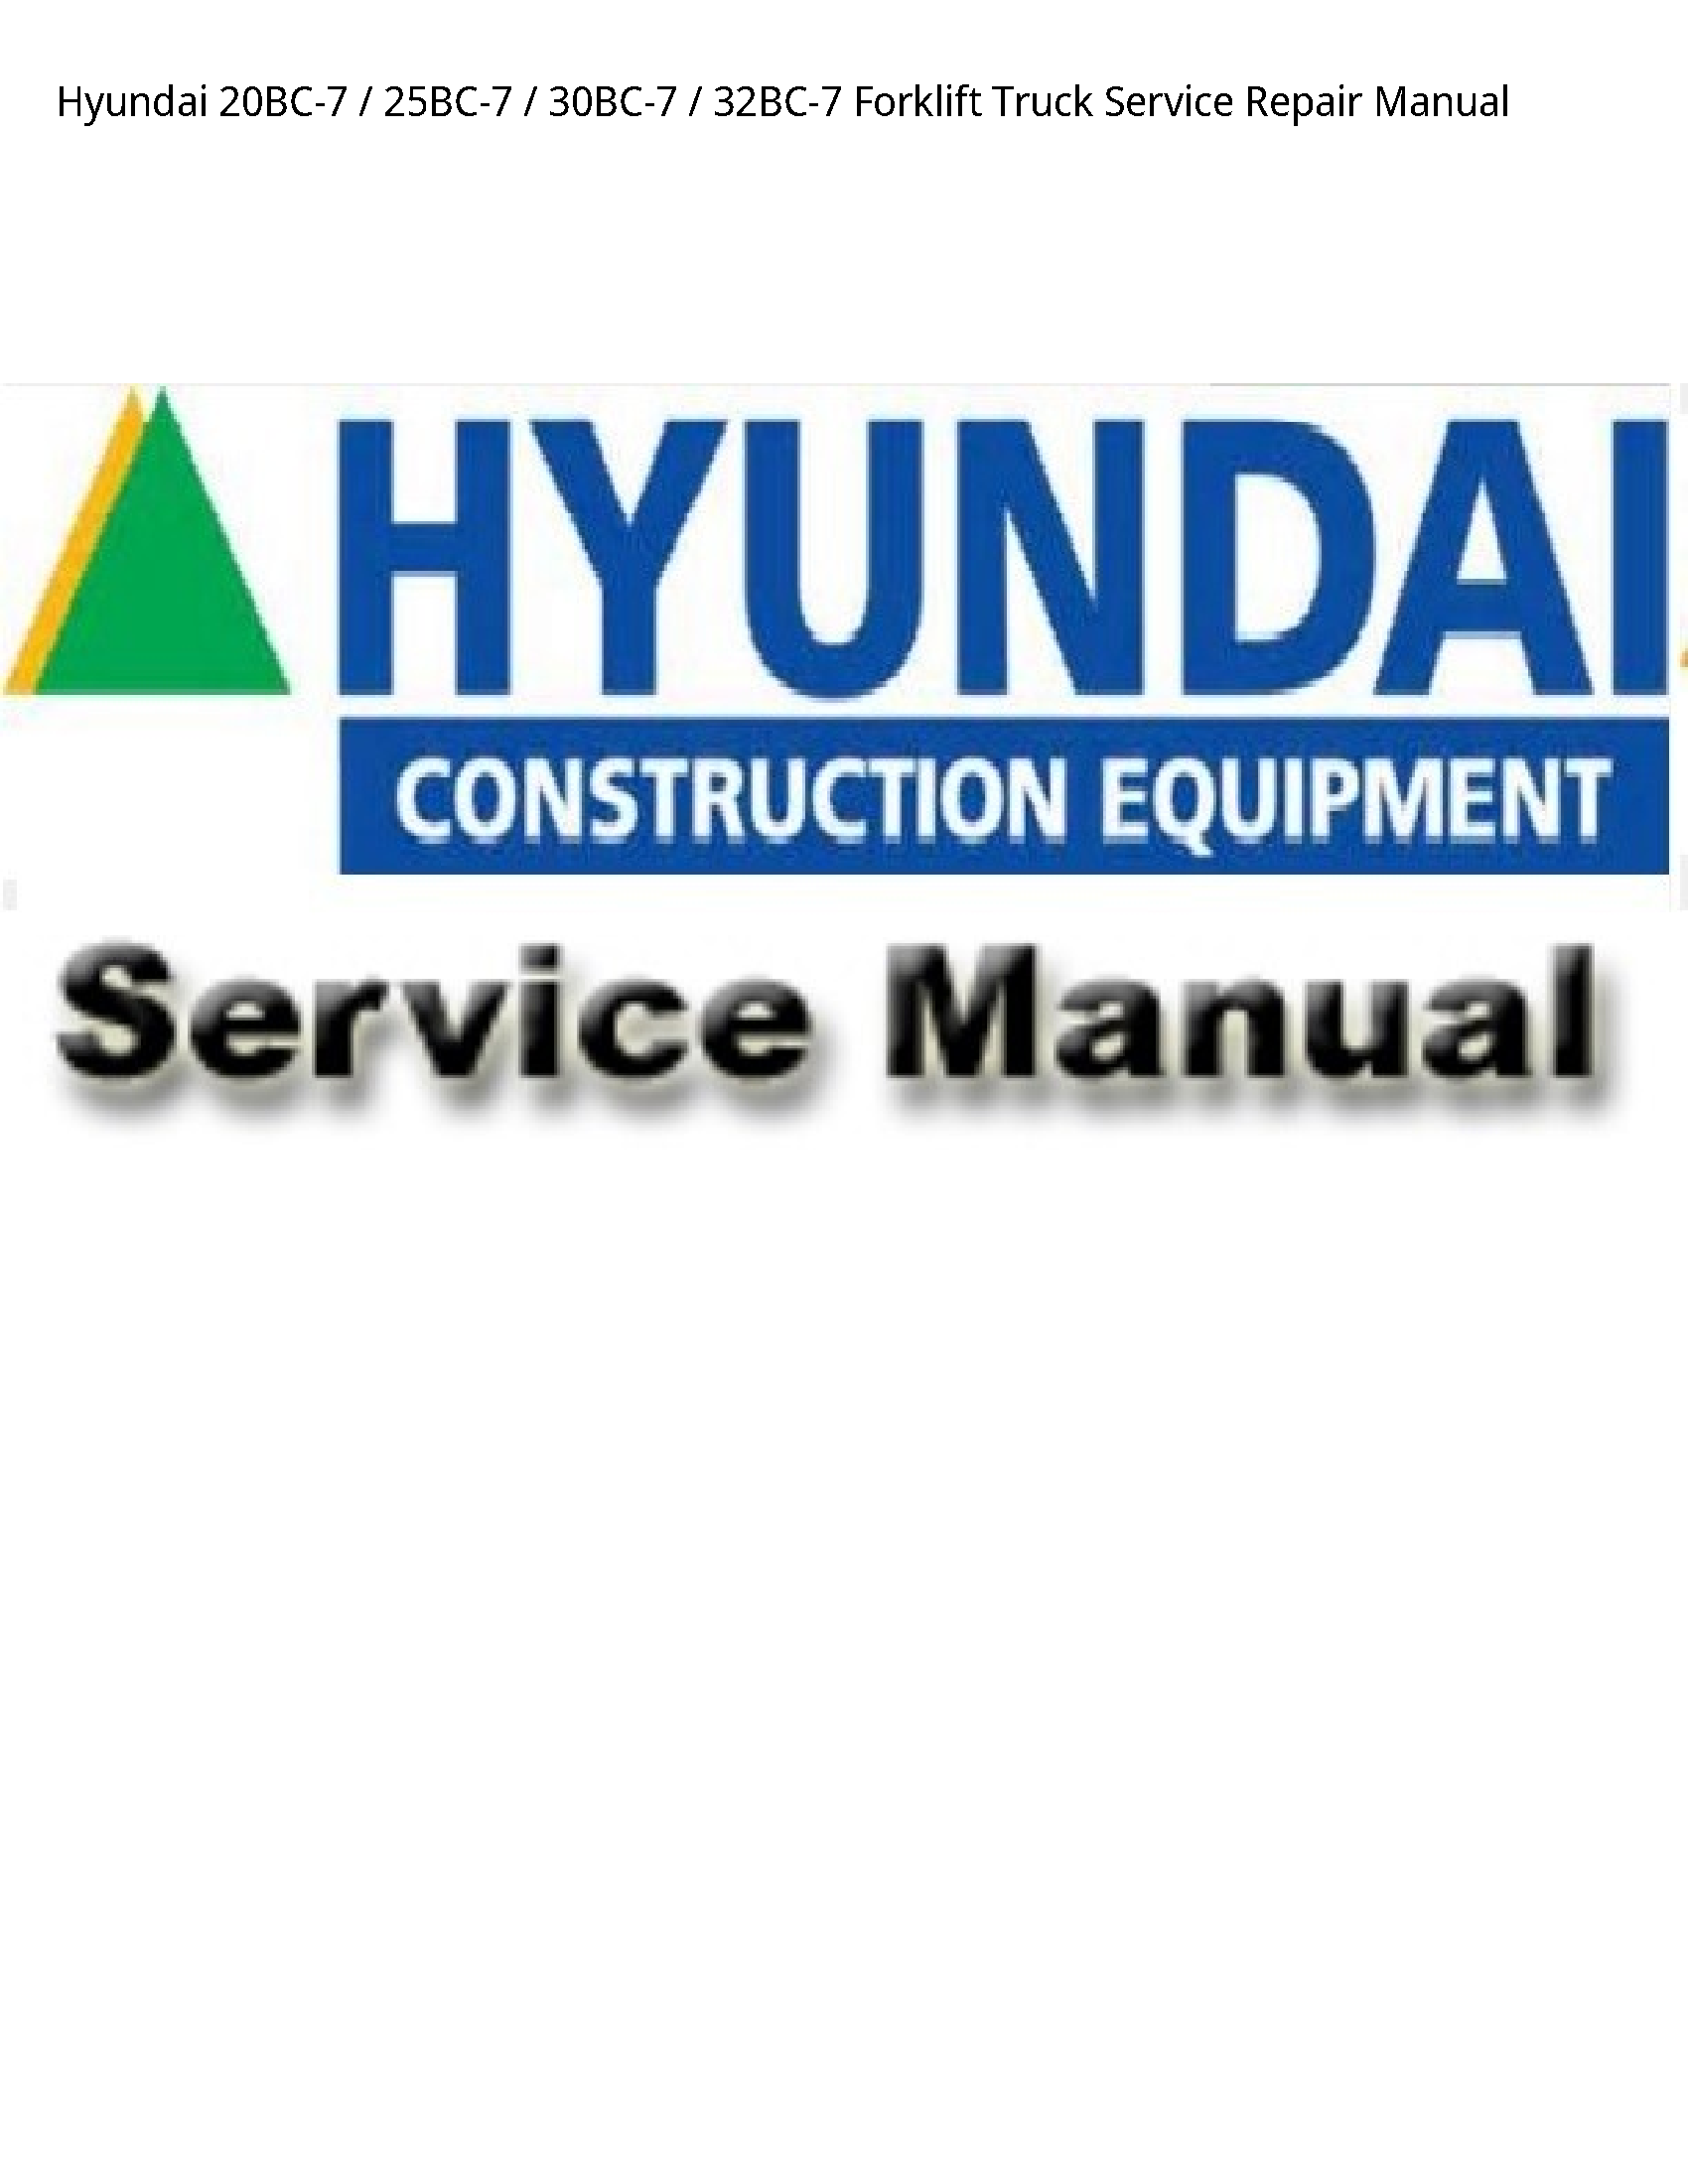 Hyundai 20BC-7 Forklift Truck manual